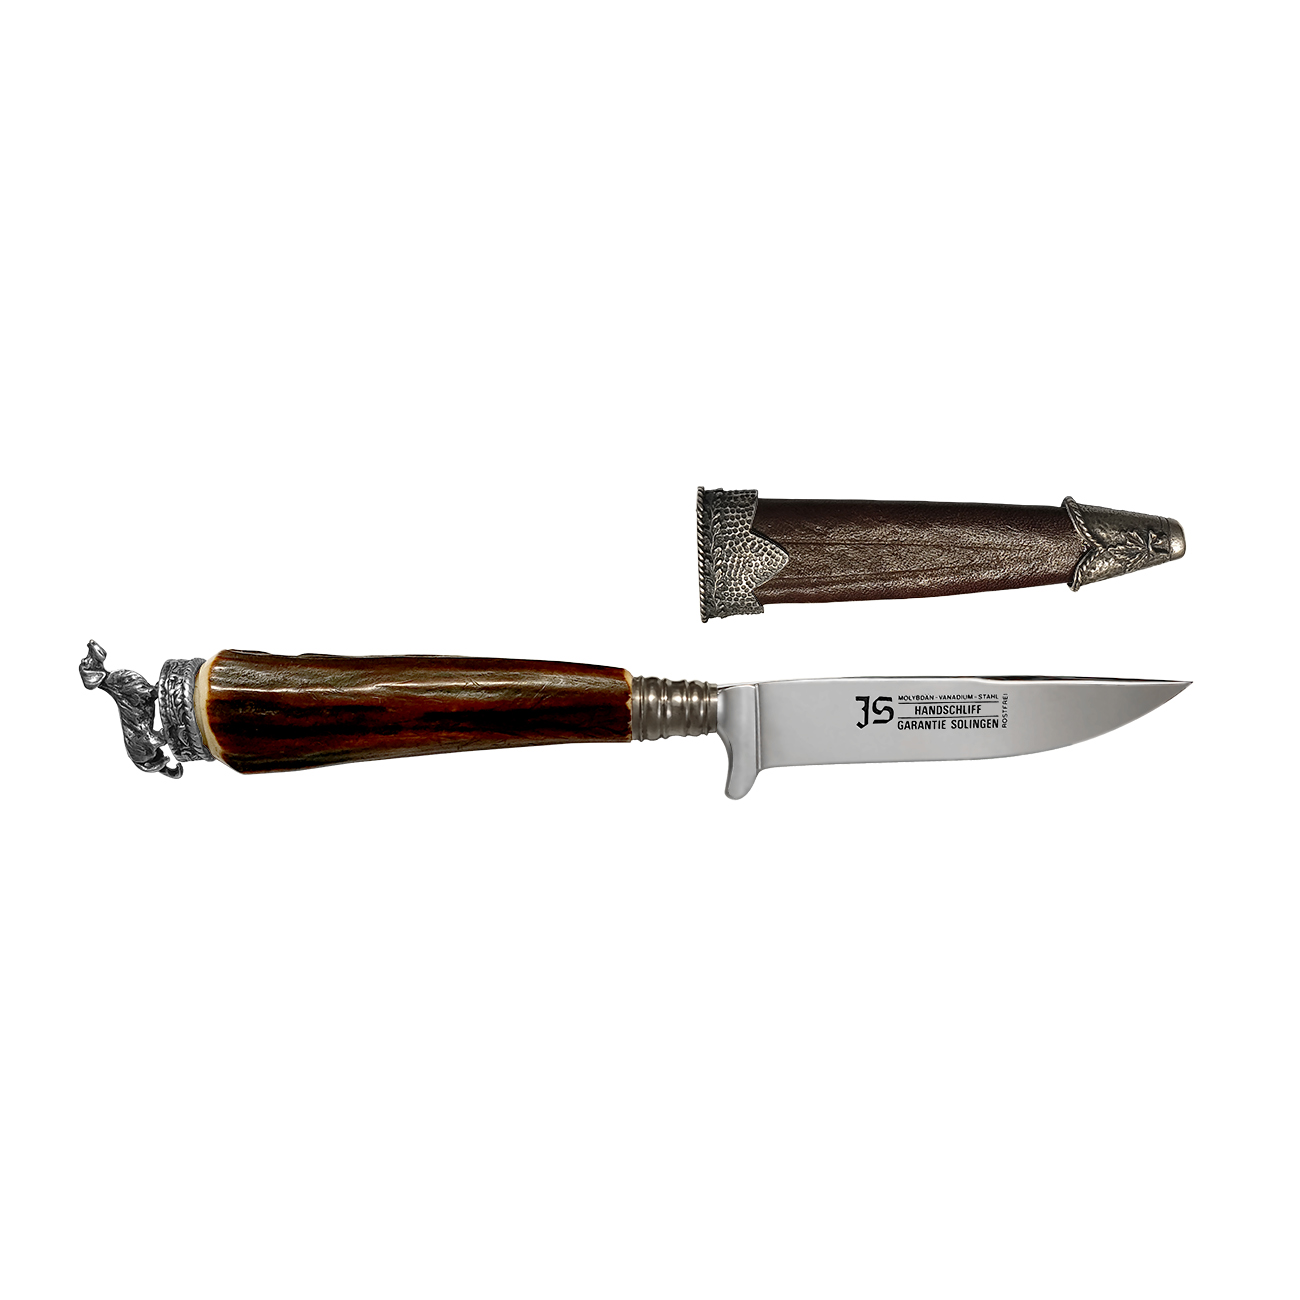 JS Handschliff Geyik Boynuzu Kabzeli El Yapımı Av Bıçağı